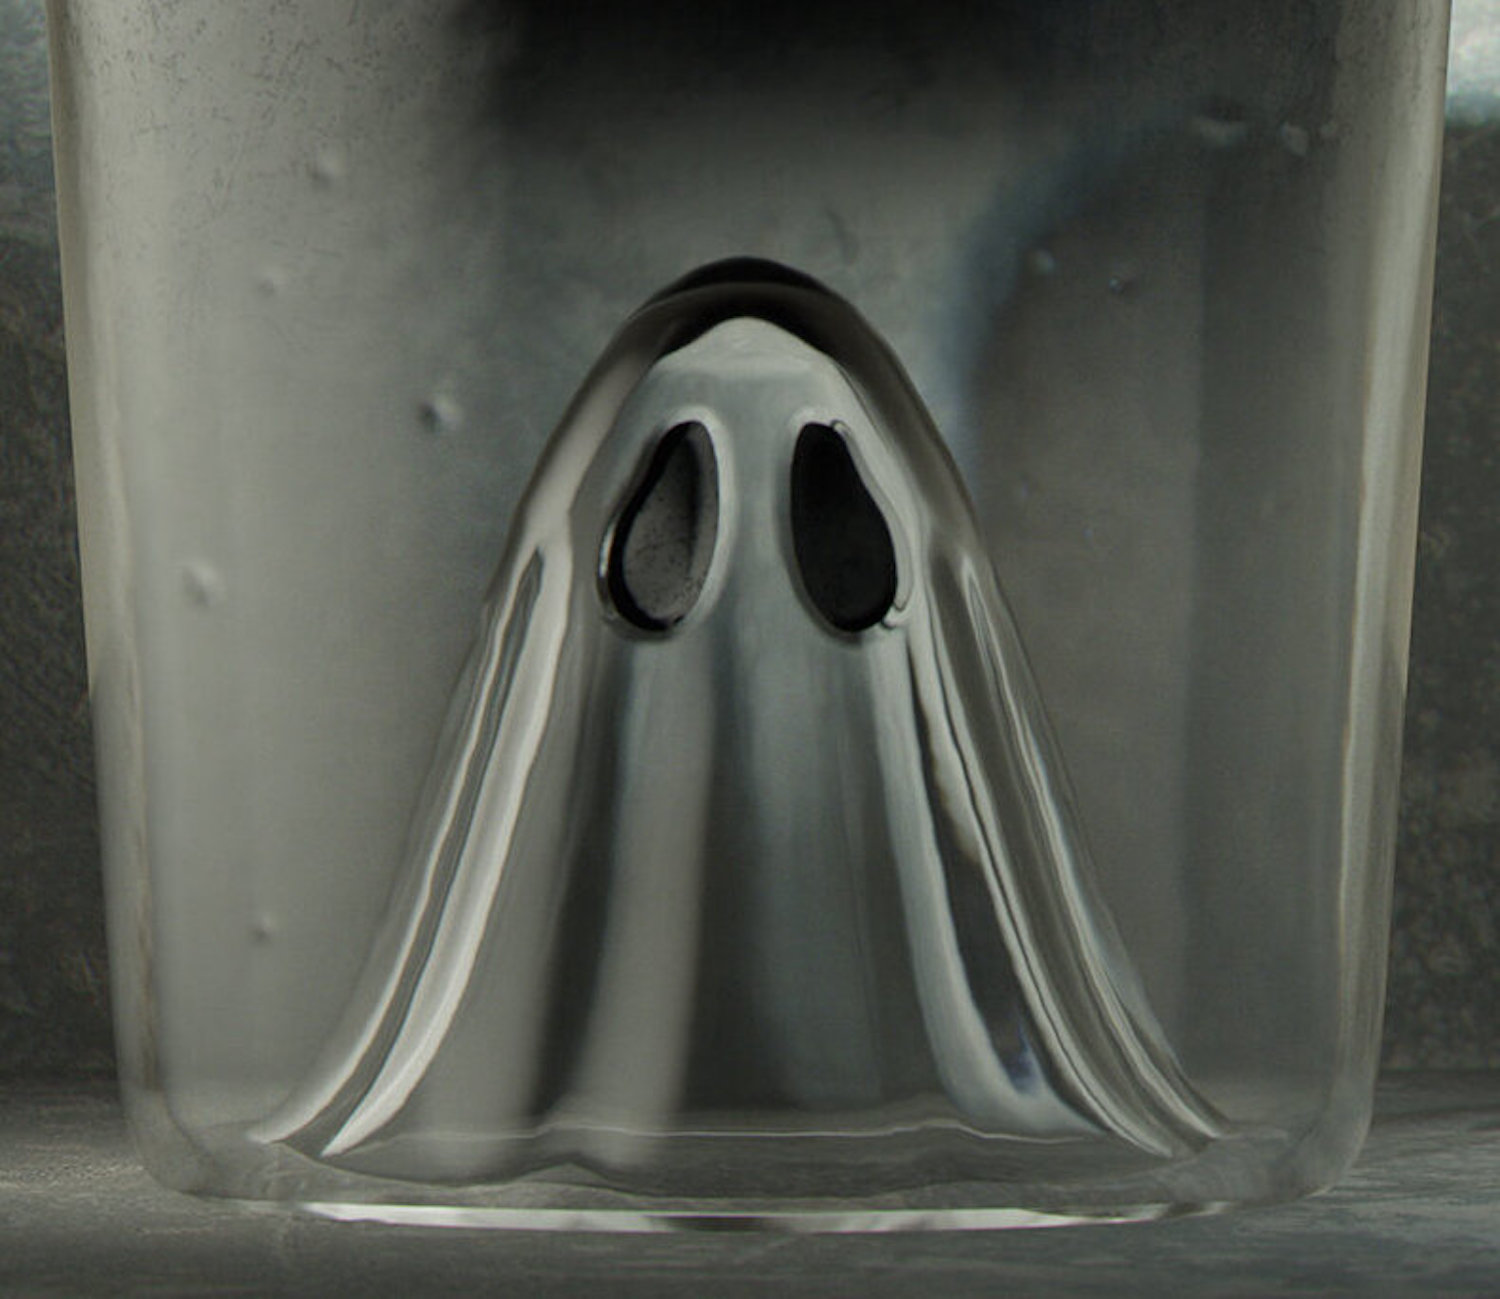 Cette bouteille de rhum intègre un petit fantôme dans son design